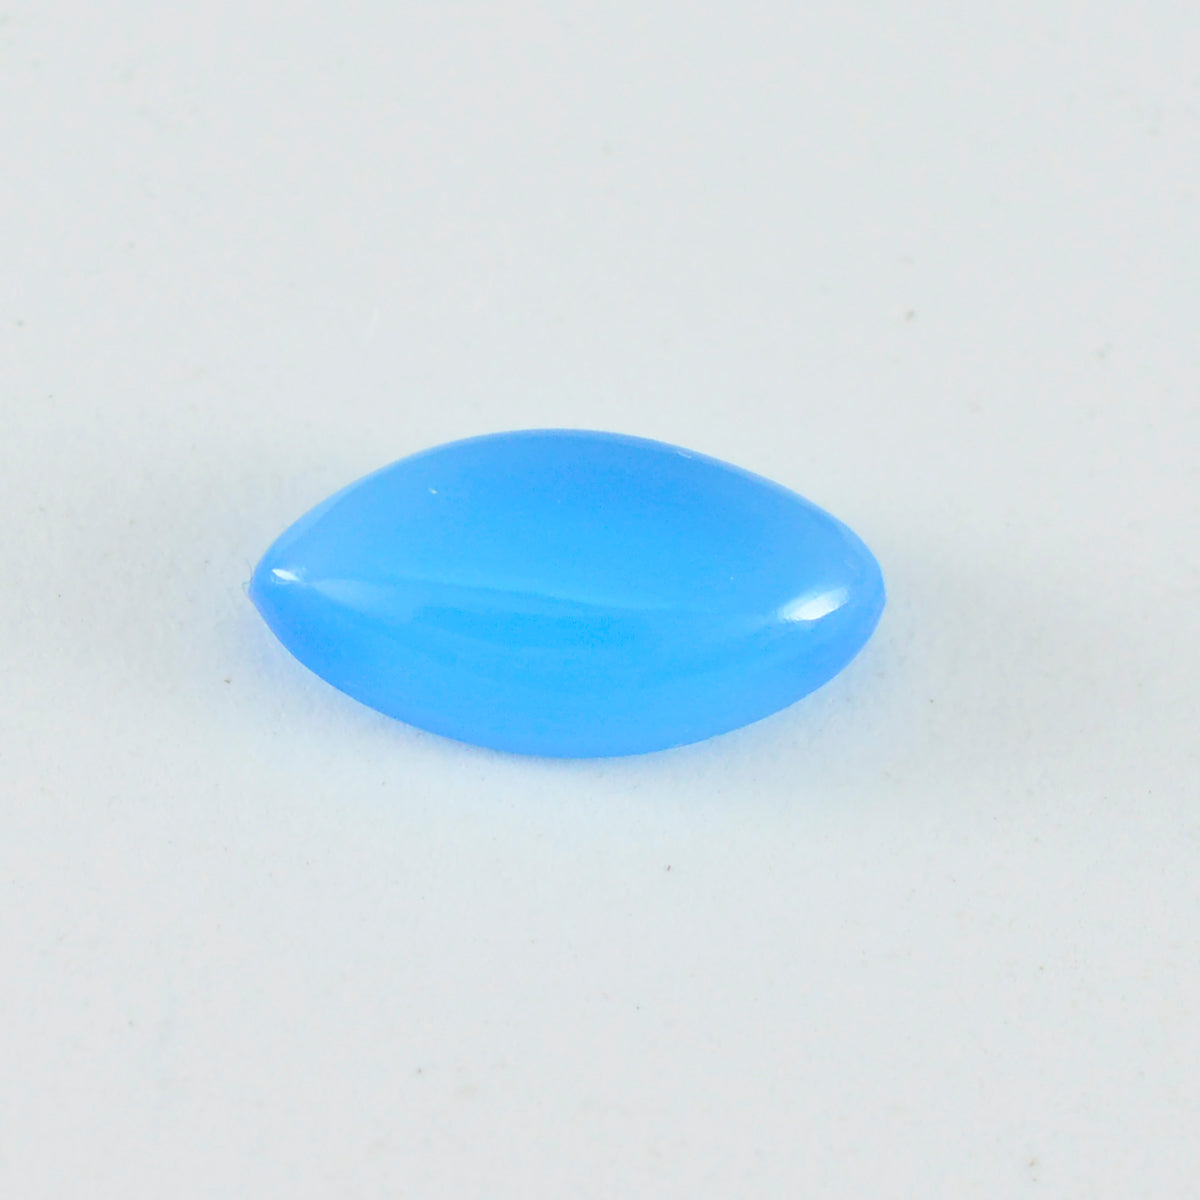 Riyogems 1 Stück blauer Chalcedon-Cabochon, 8 x 16 mm, Marquise-Form, tolle Qualitäts-Edelsteine